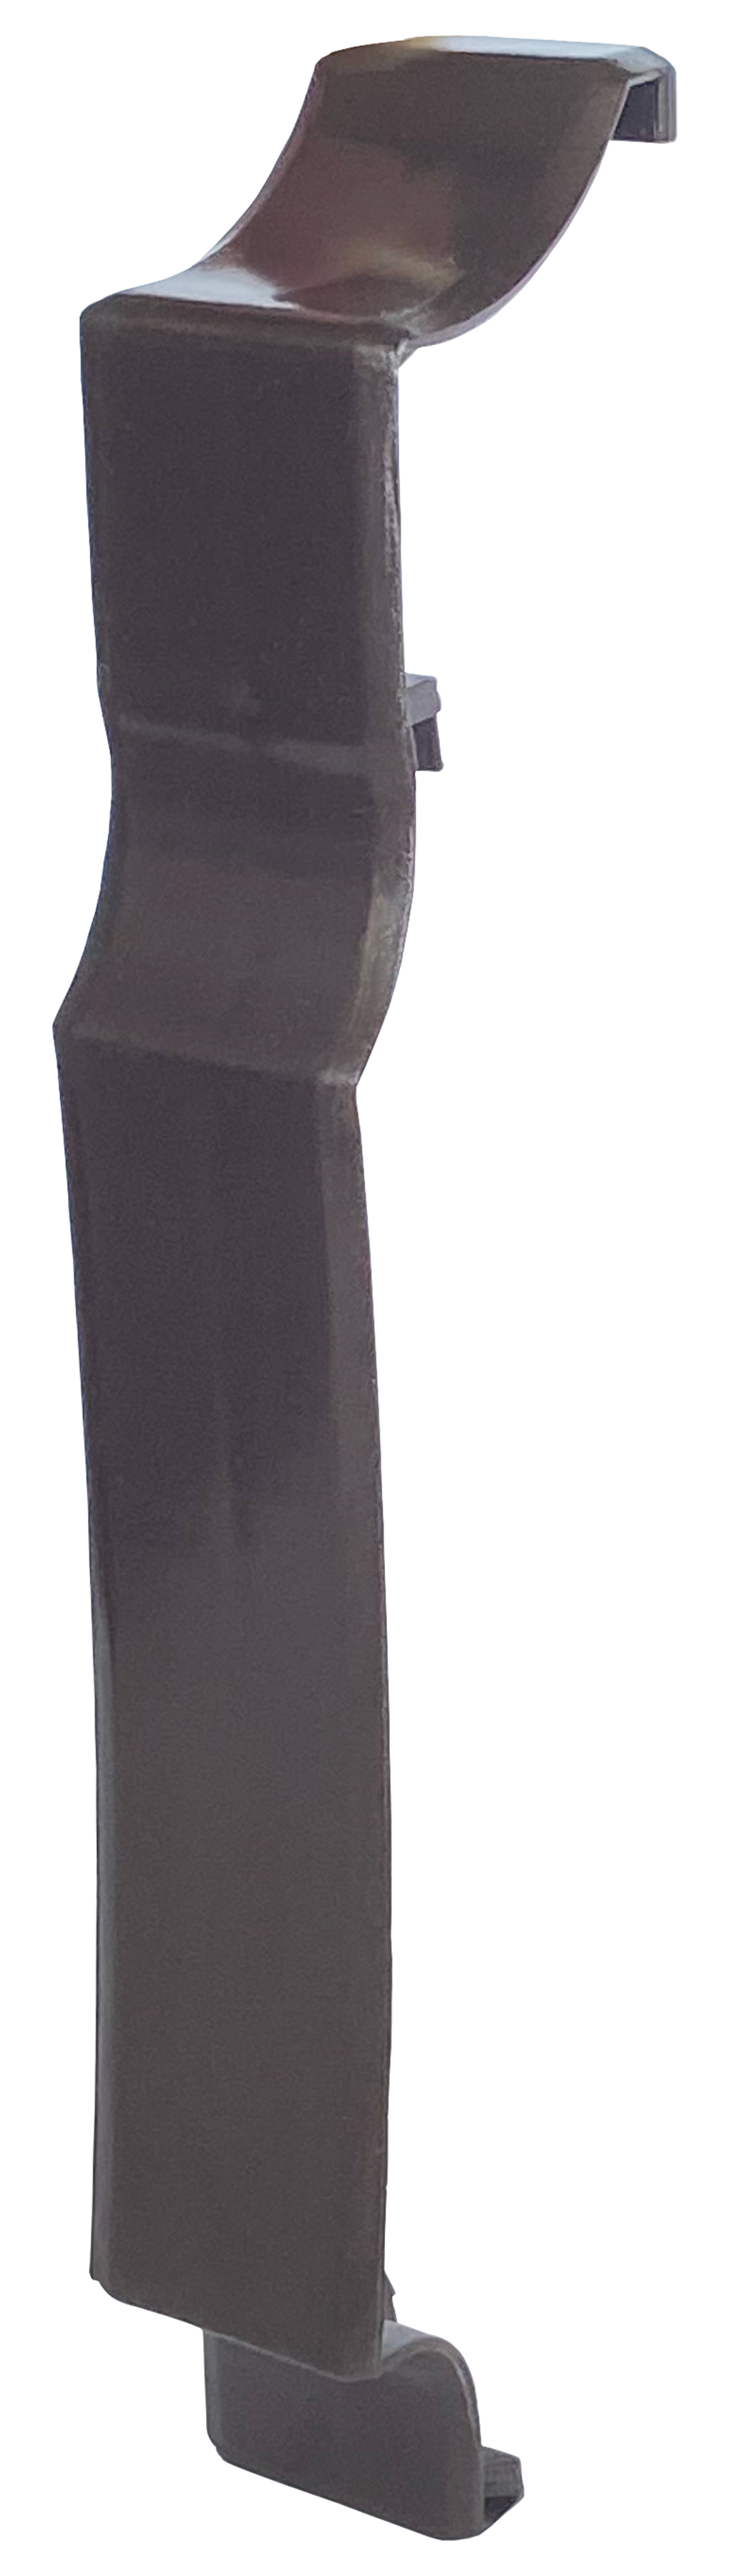 Ціна аксесуар для плінтусного нагрівача Термія планка з'єднувальна ПЗ (коричнева) в Луцьку